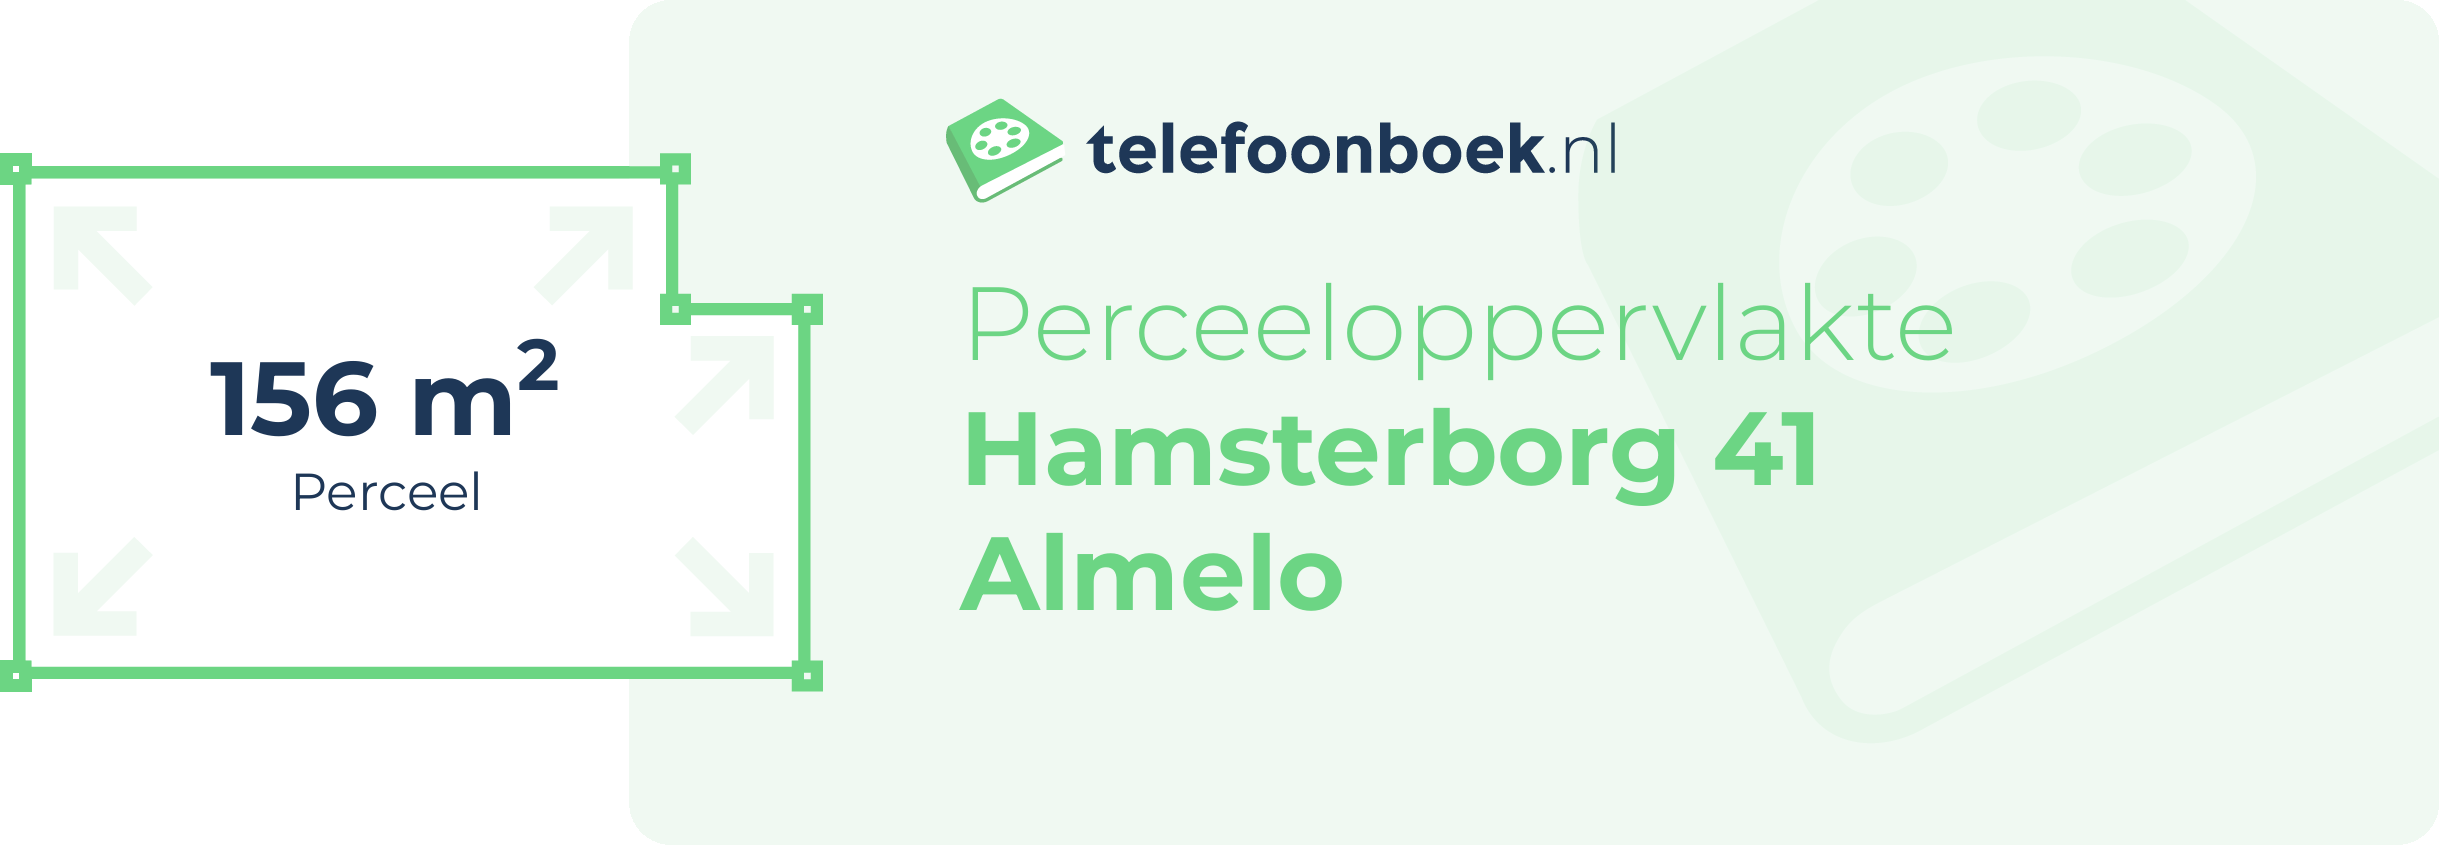 Perceeloppervlakte Hamsterborg 41 Almelo